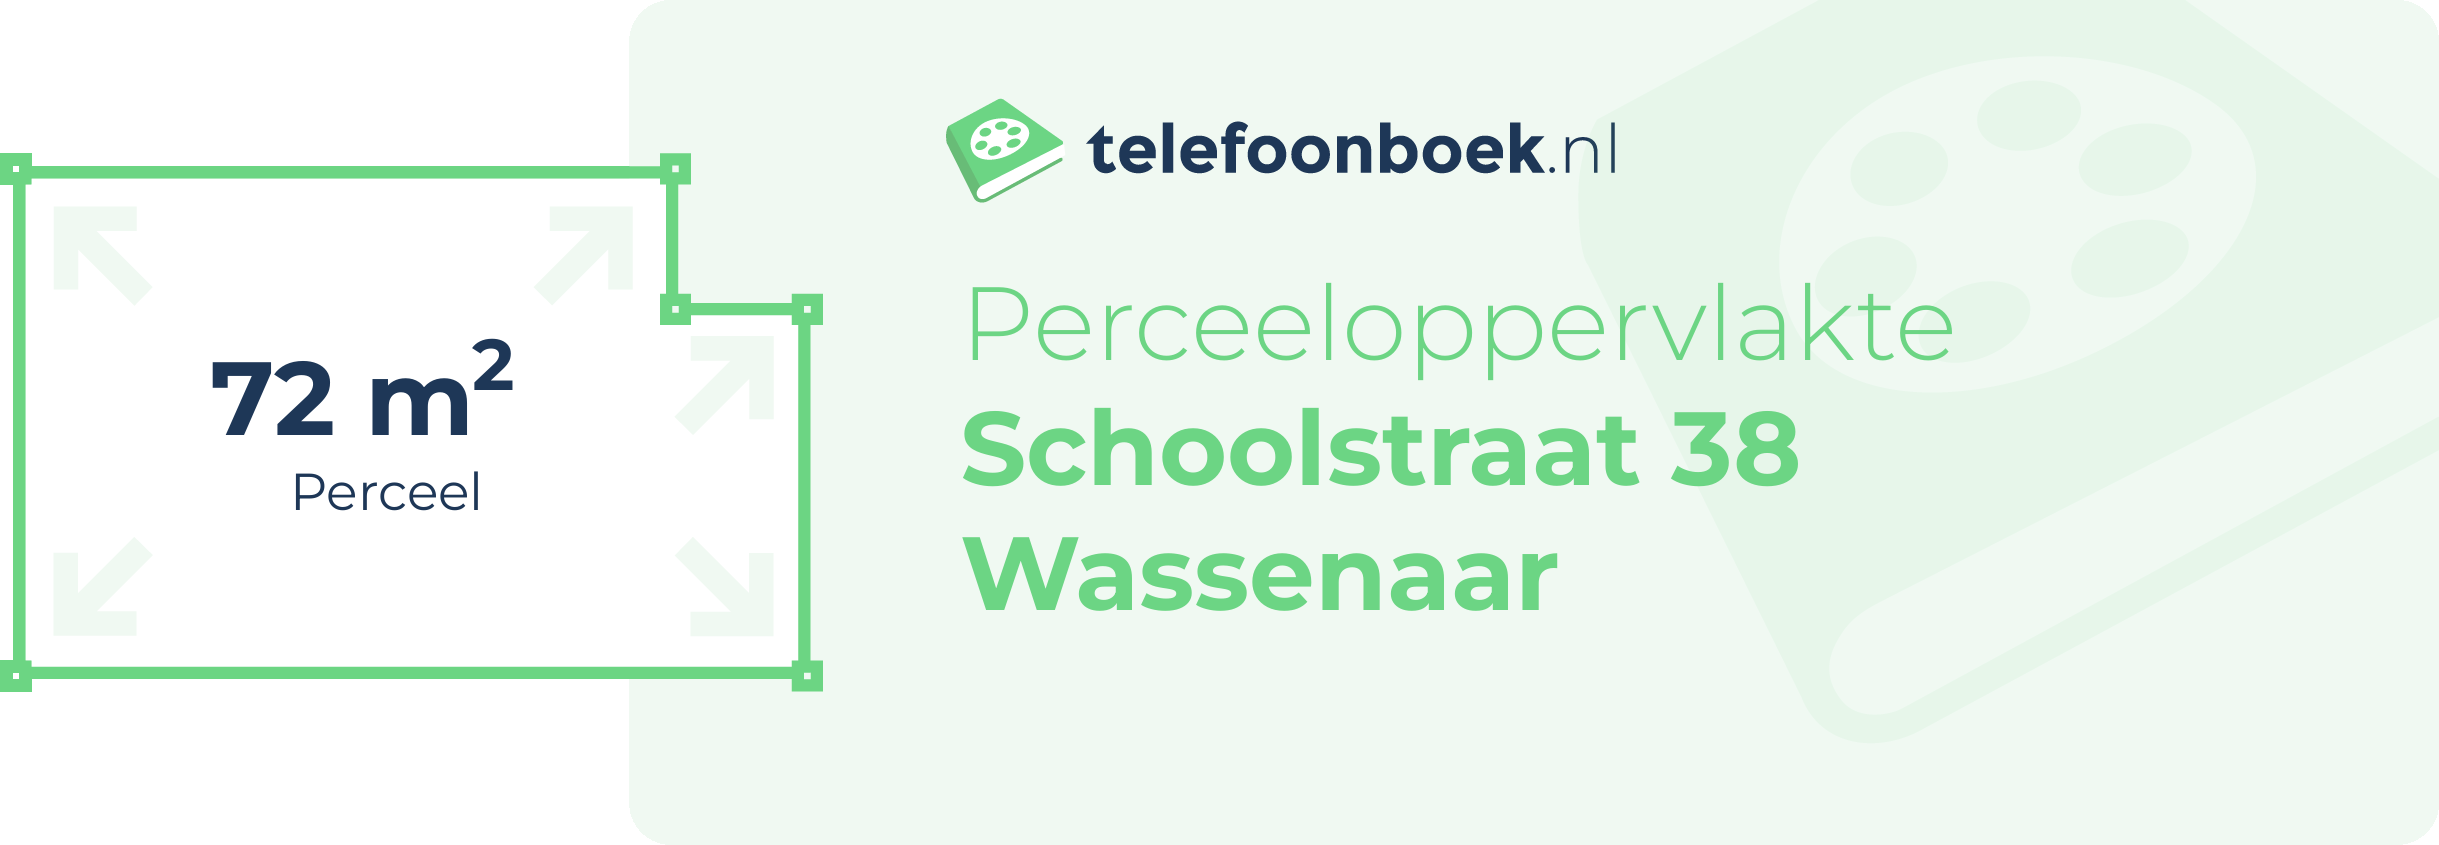 Perceeloppervlakte Schoolstraat 38 Wassenaar